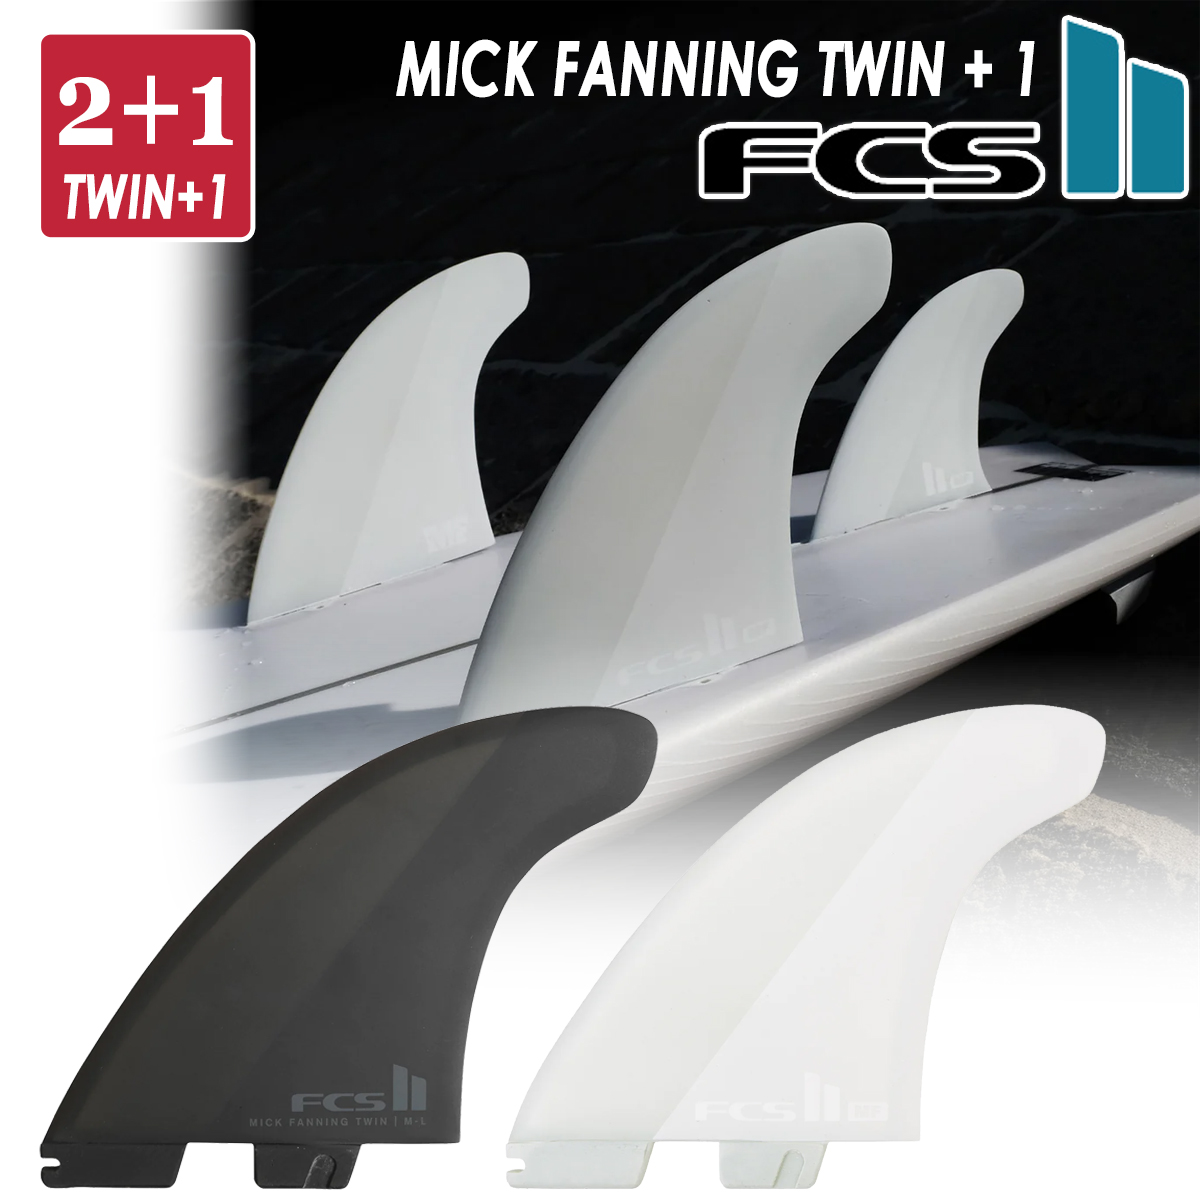 24 FCS2 フィン MF TWIN +1 PC ミックファニング ツイン エアコア 2+1 